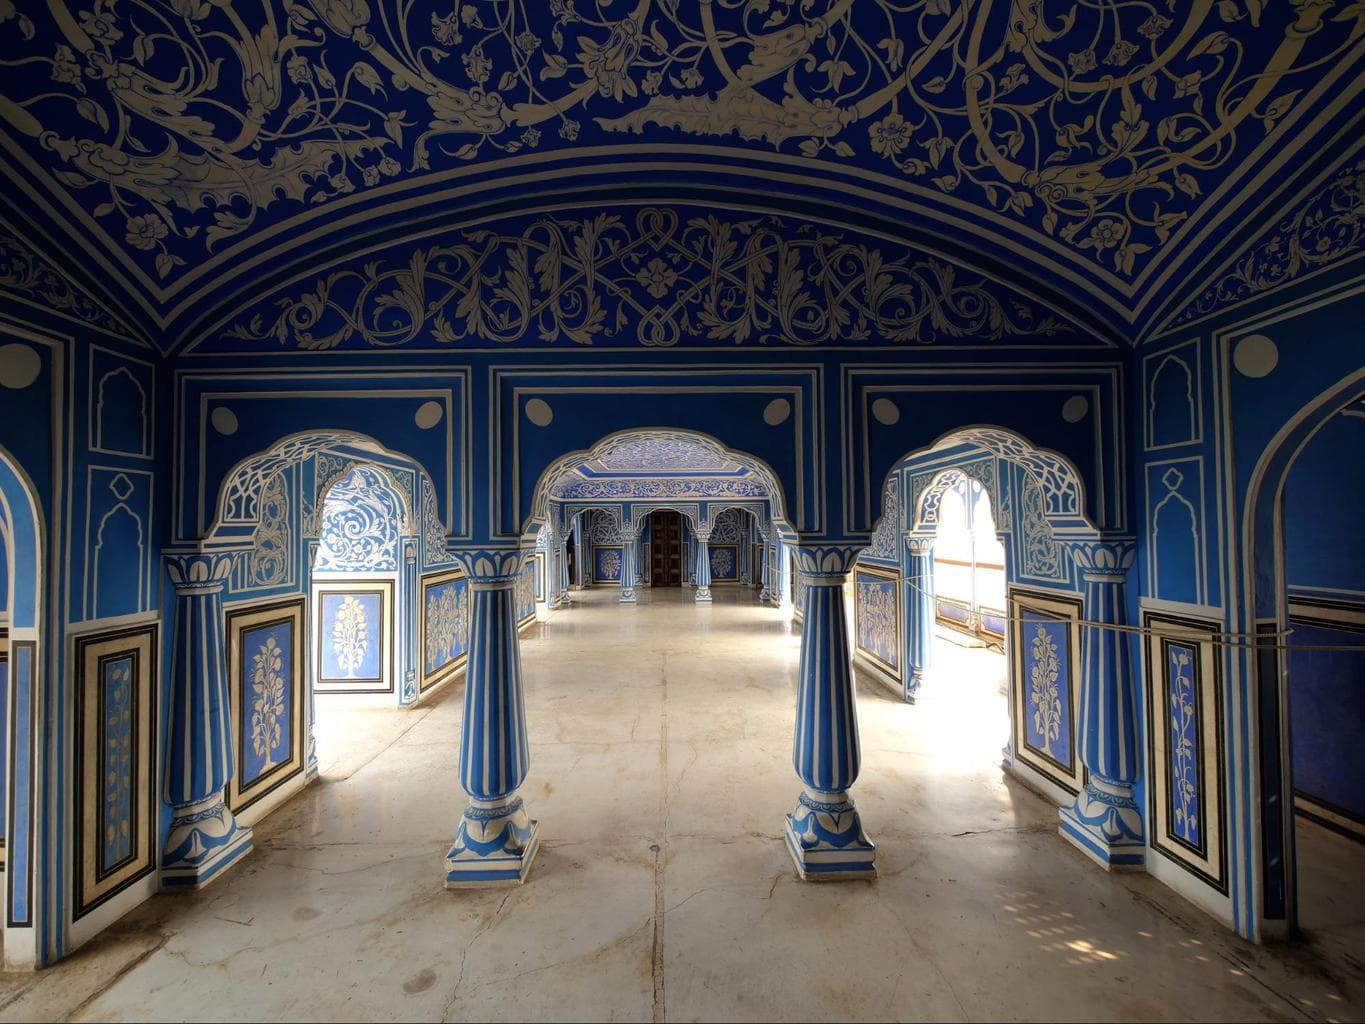 Shuk Niwas at Jaipur’s City Palace